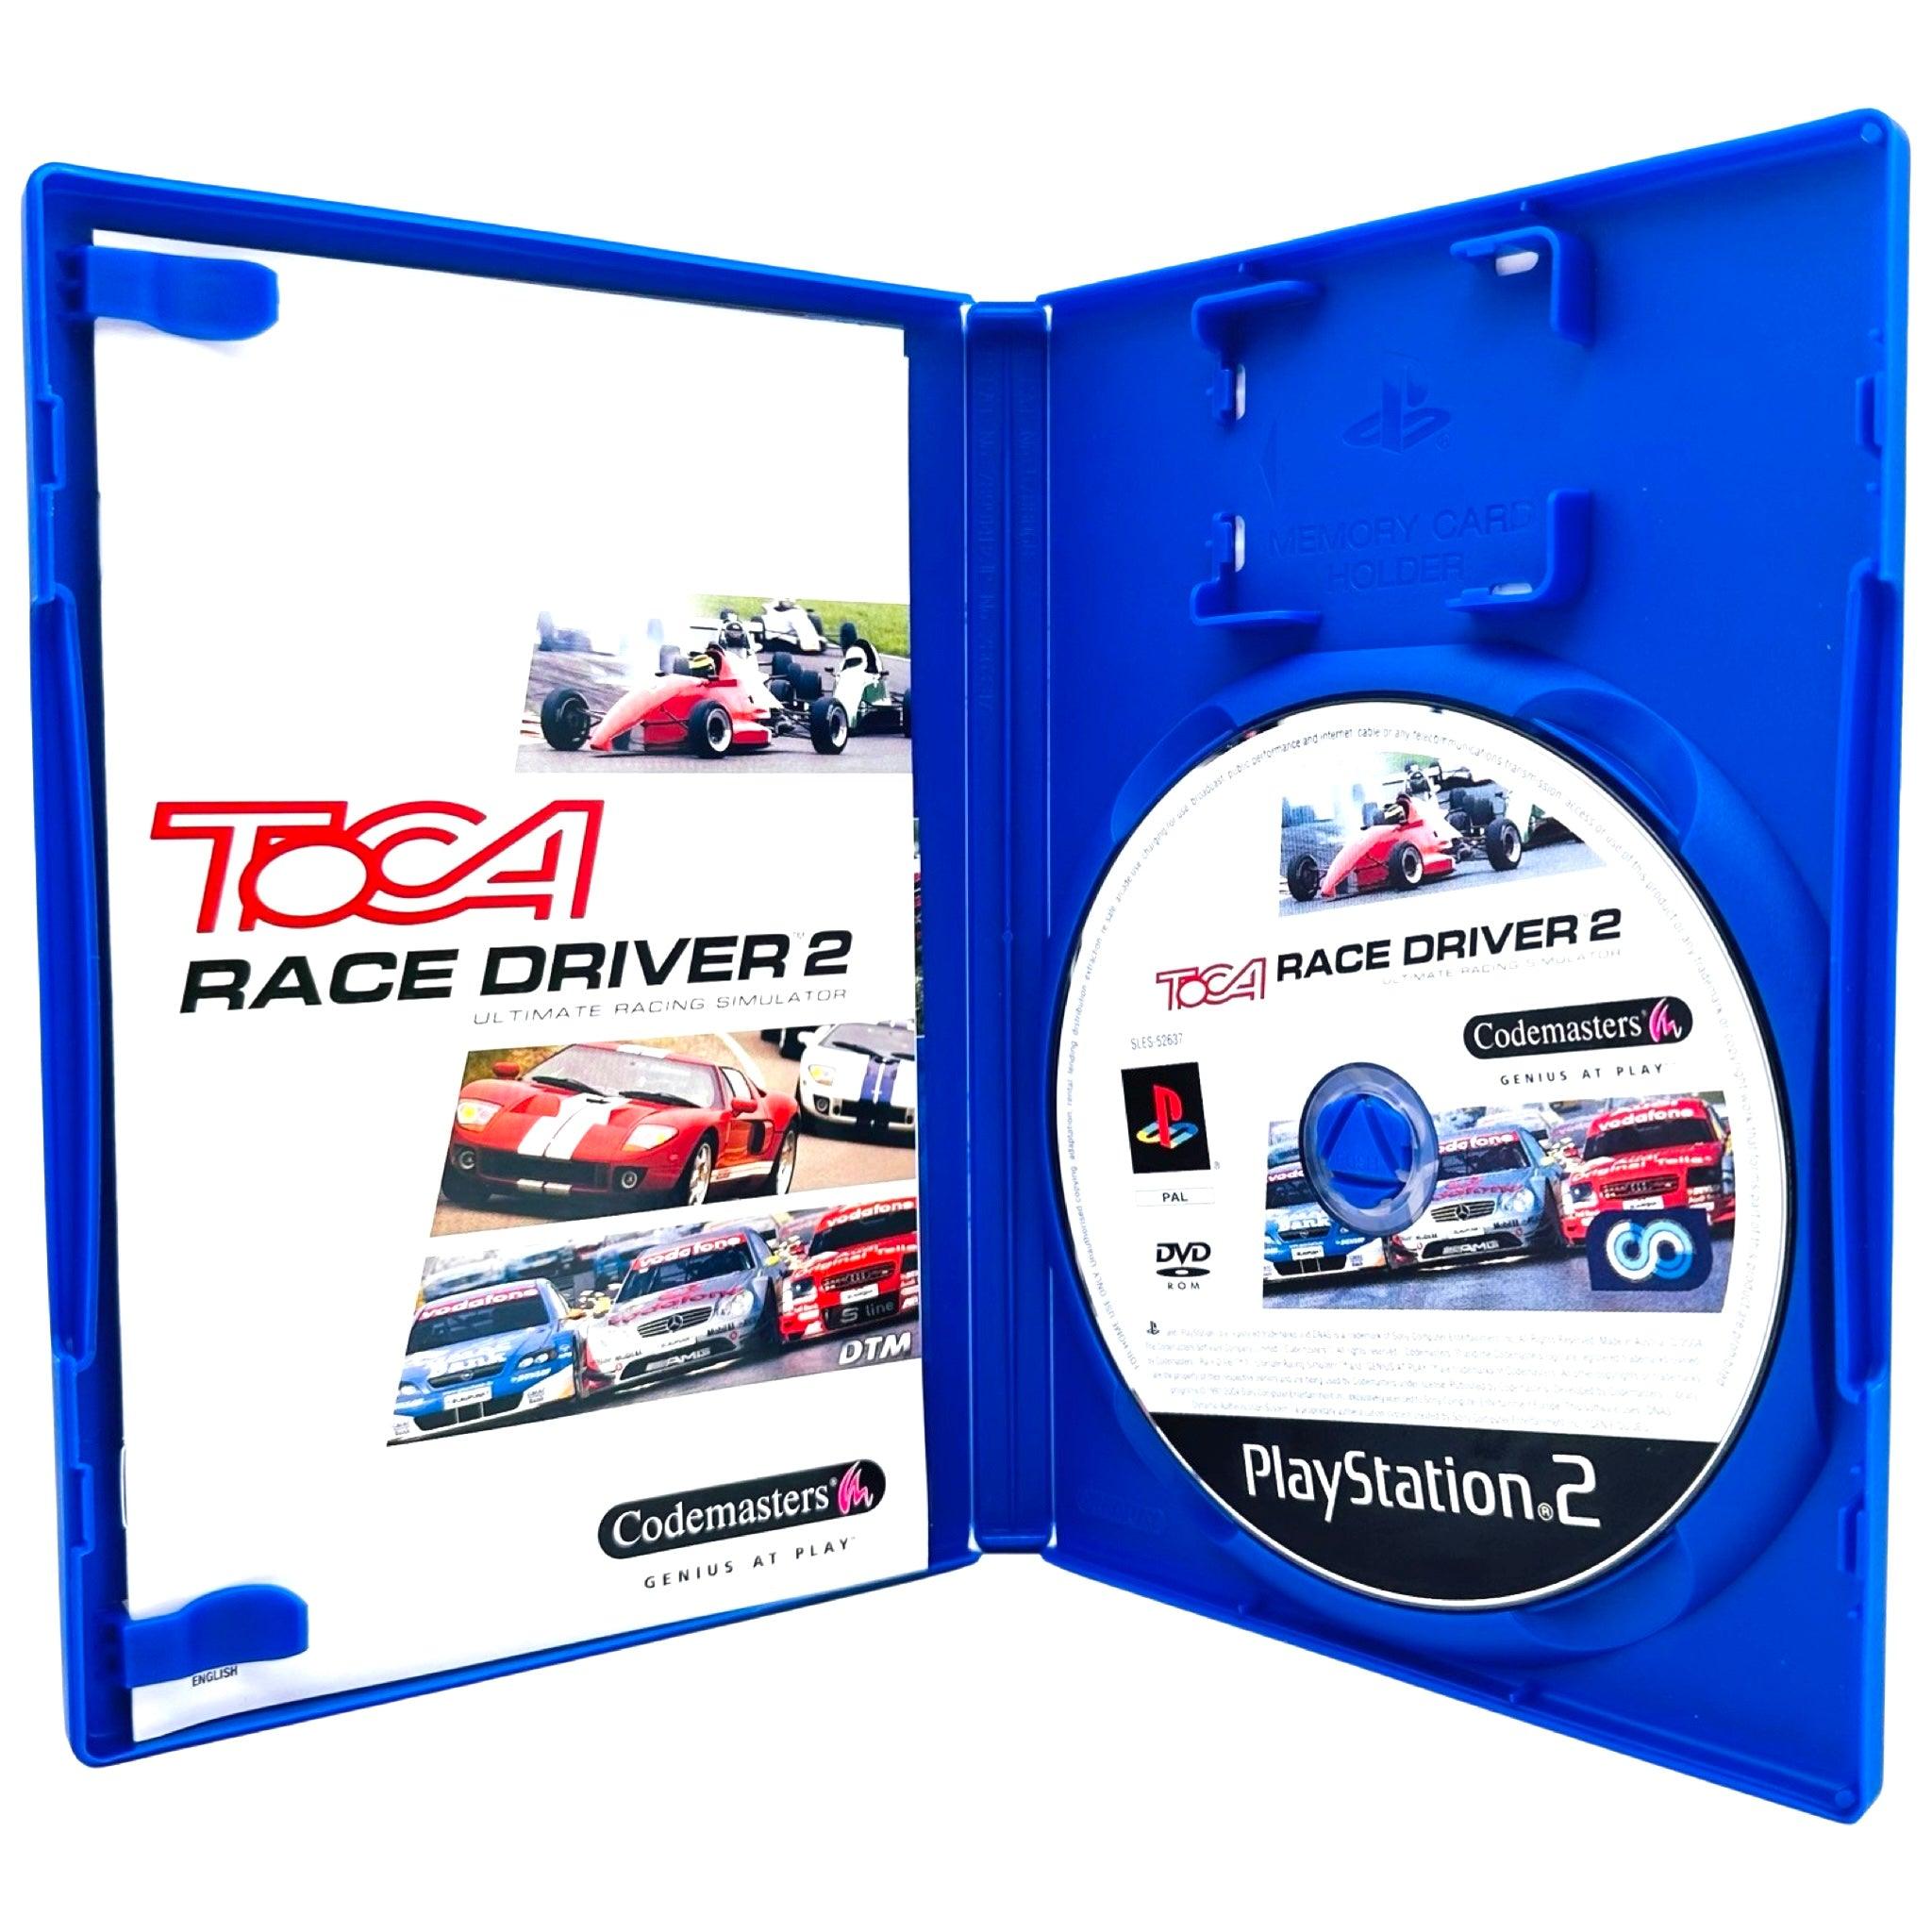 PS2: TOCA Race Driver 2 - RetroGaming.no